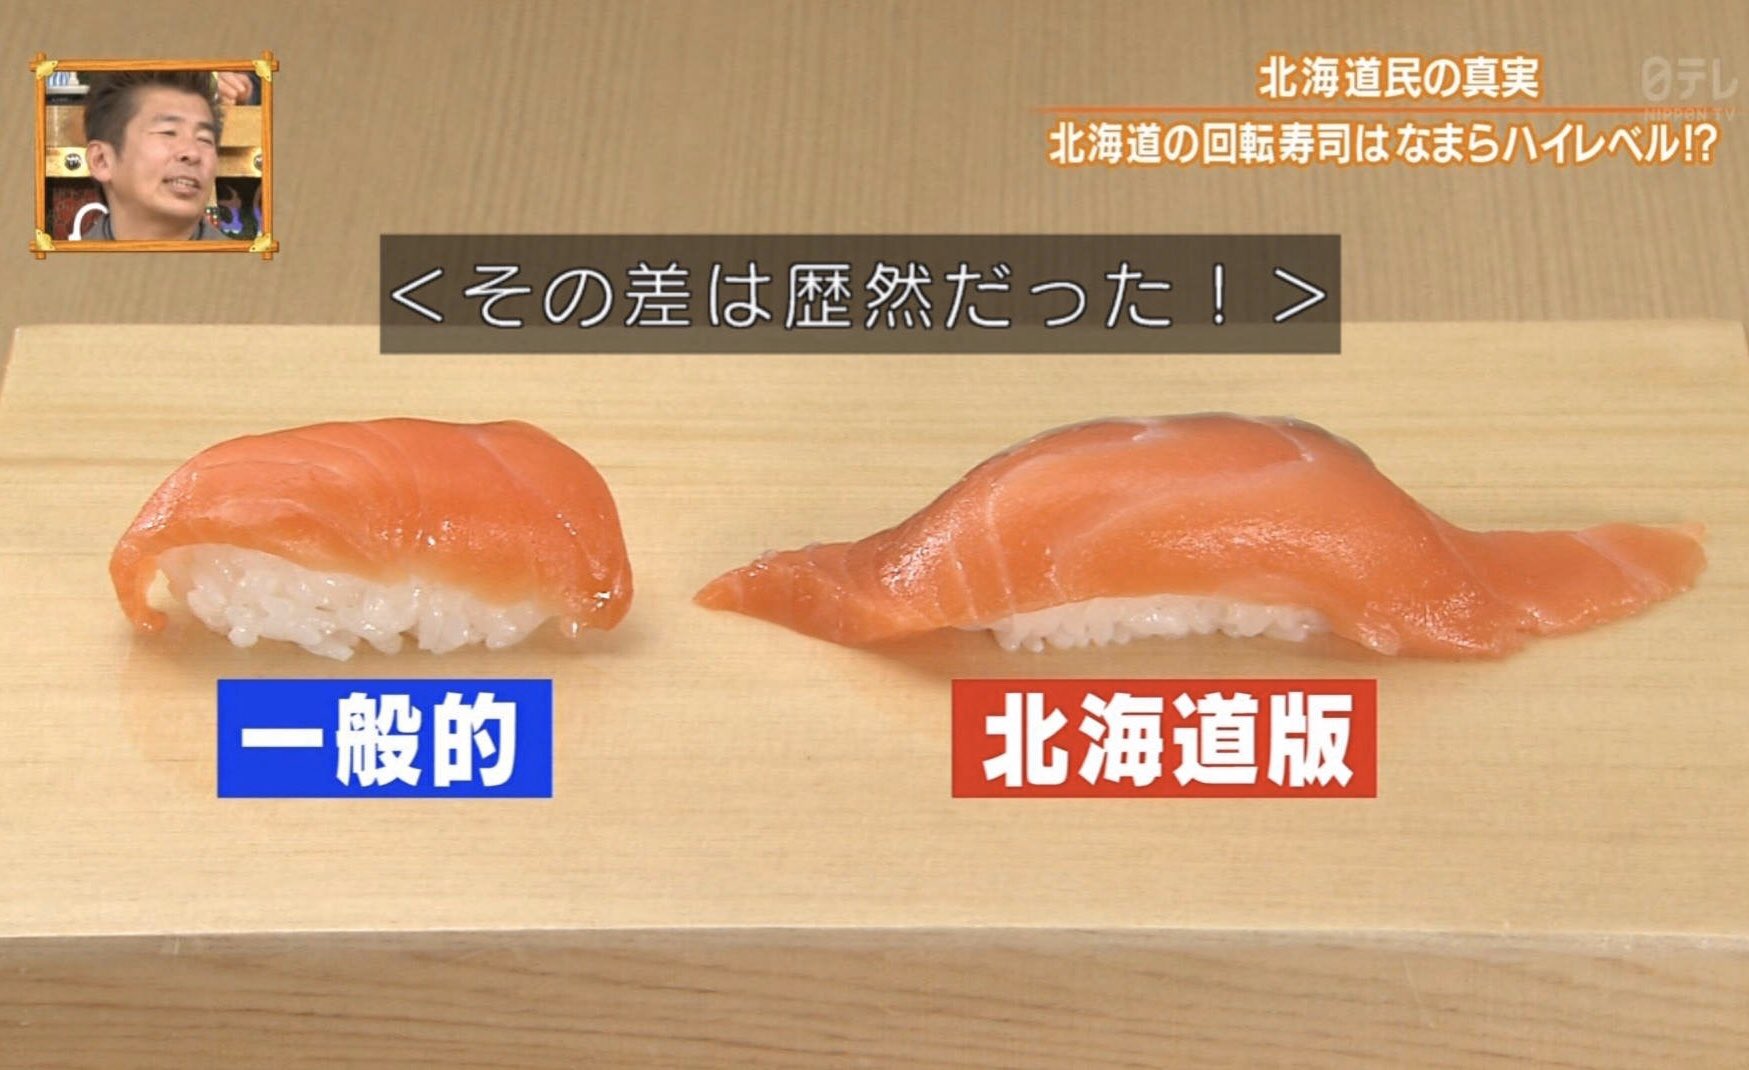 実はハイレベル？北海道版と一般的な寿司の違い!